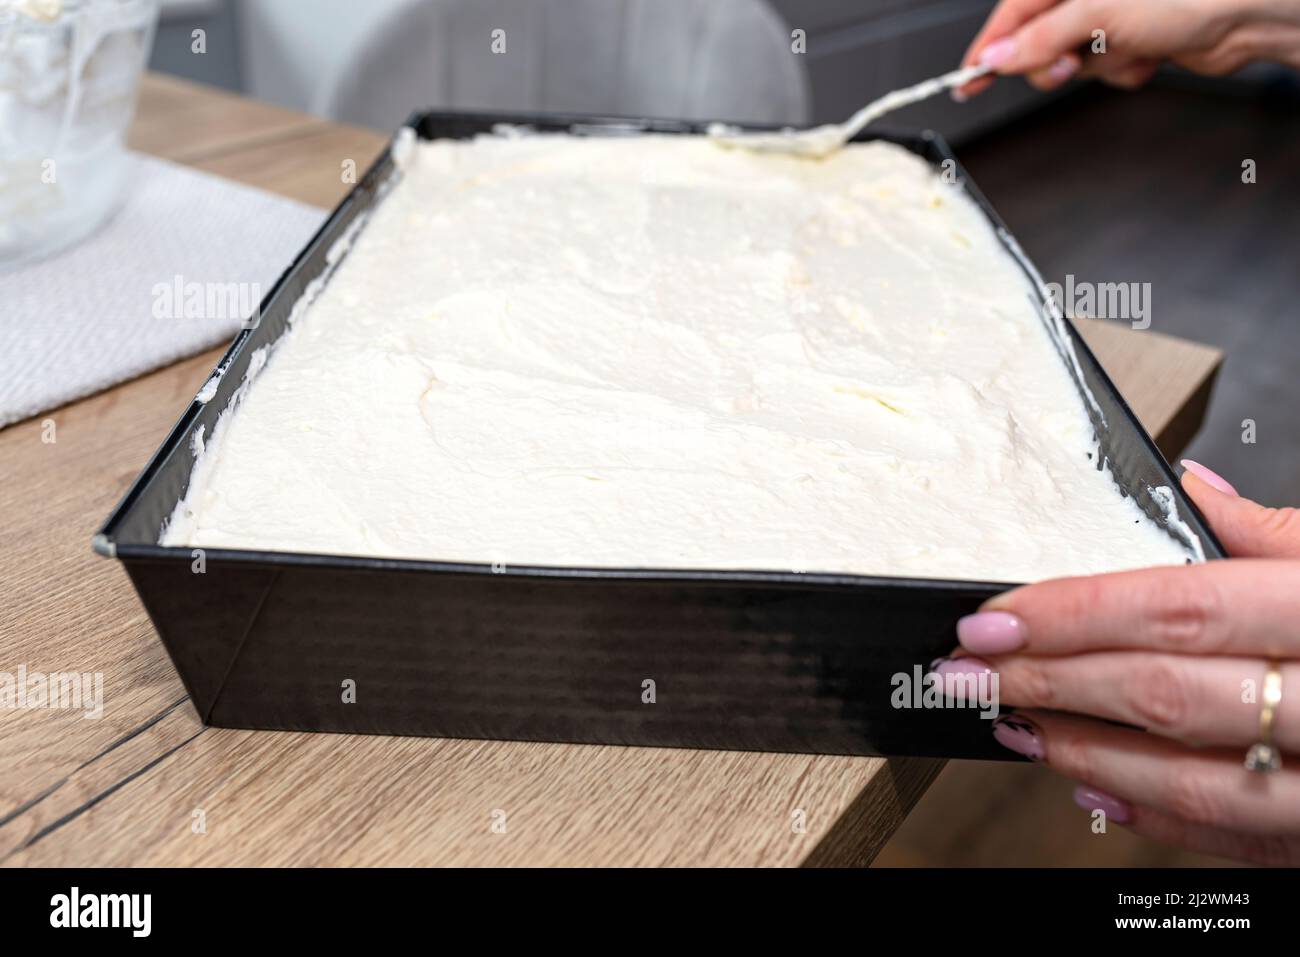 можно ли выпекать на фольге пиццу в духовке вместо пергаментной бумаги фото 42